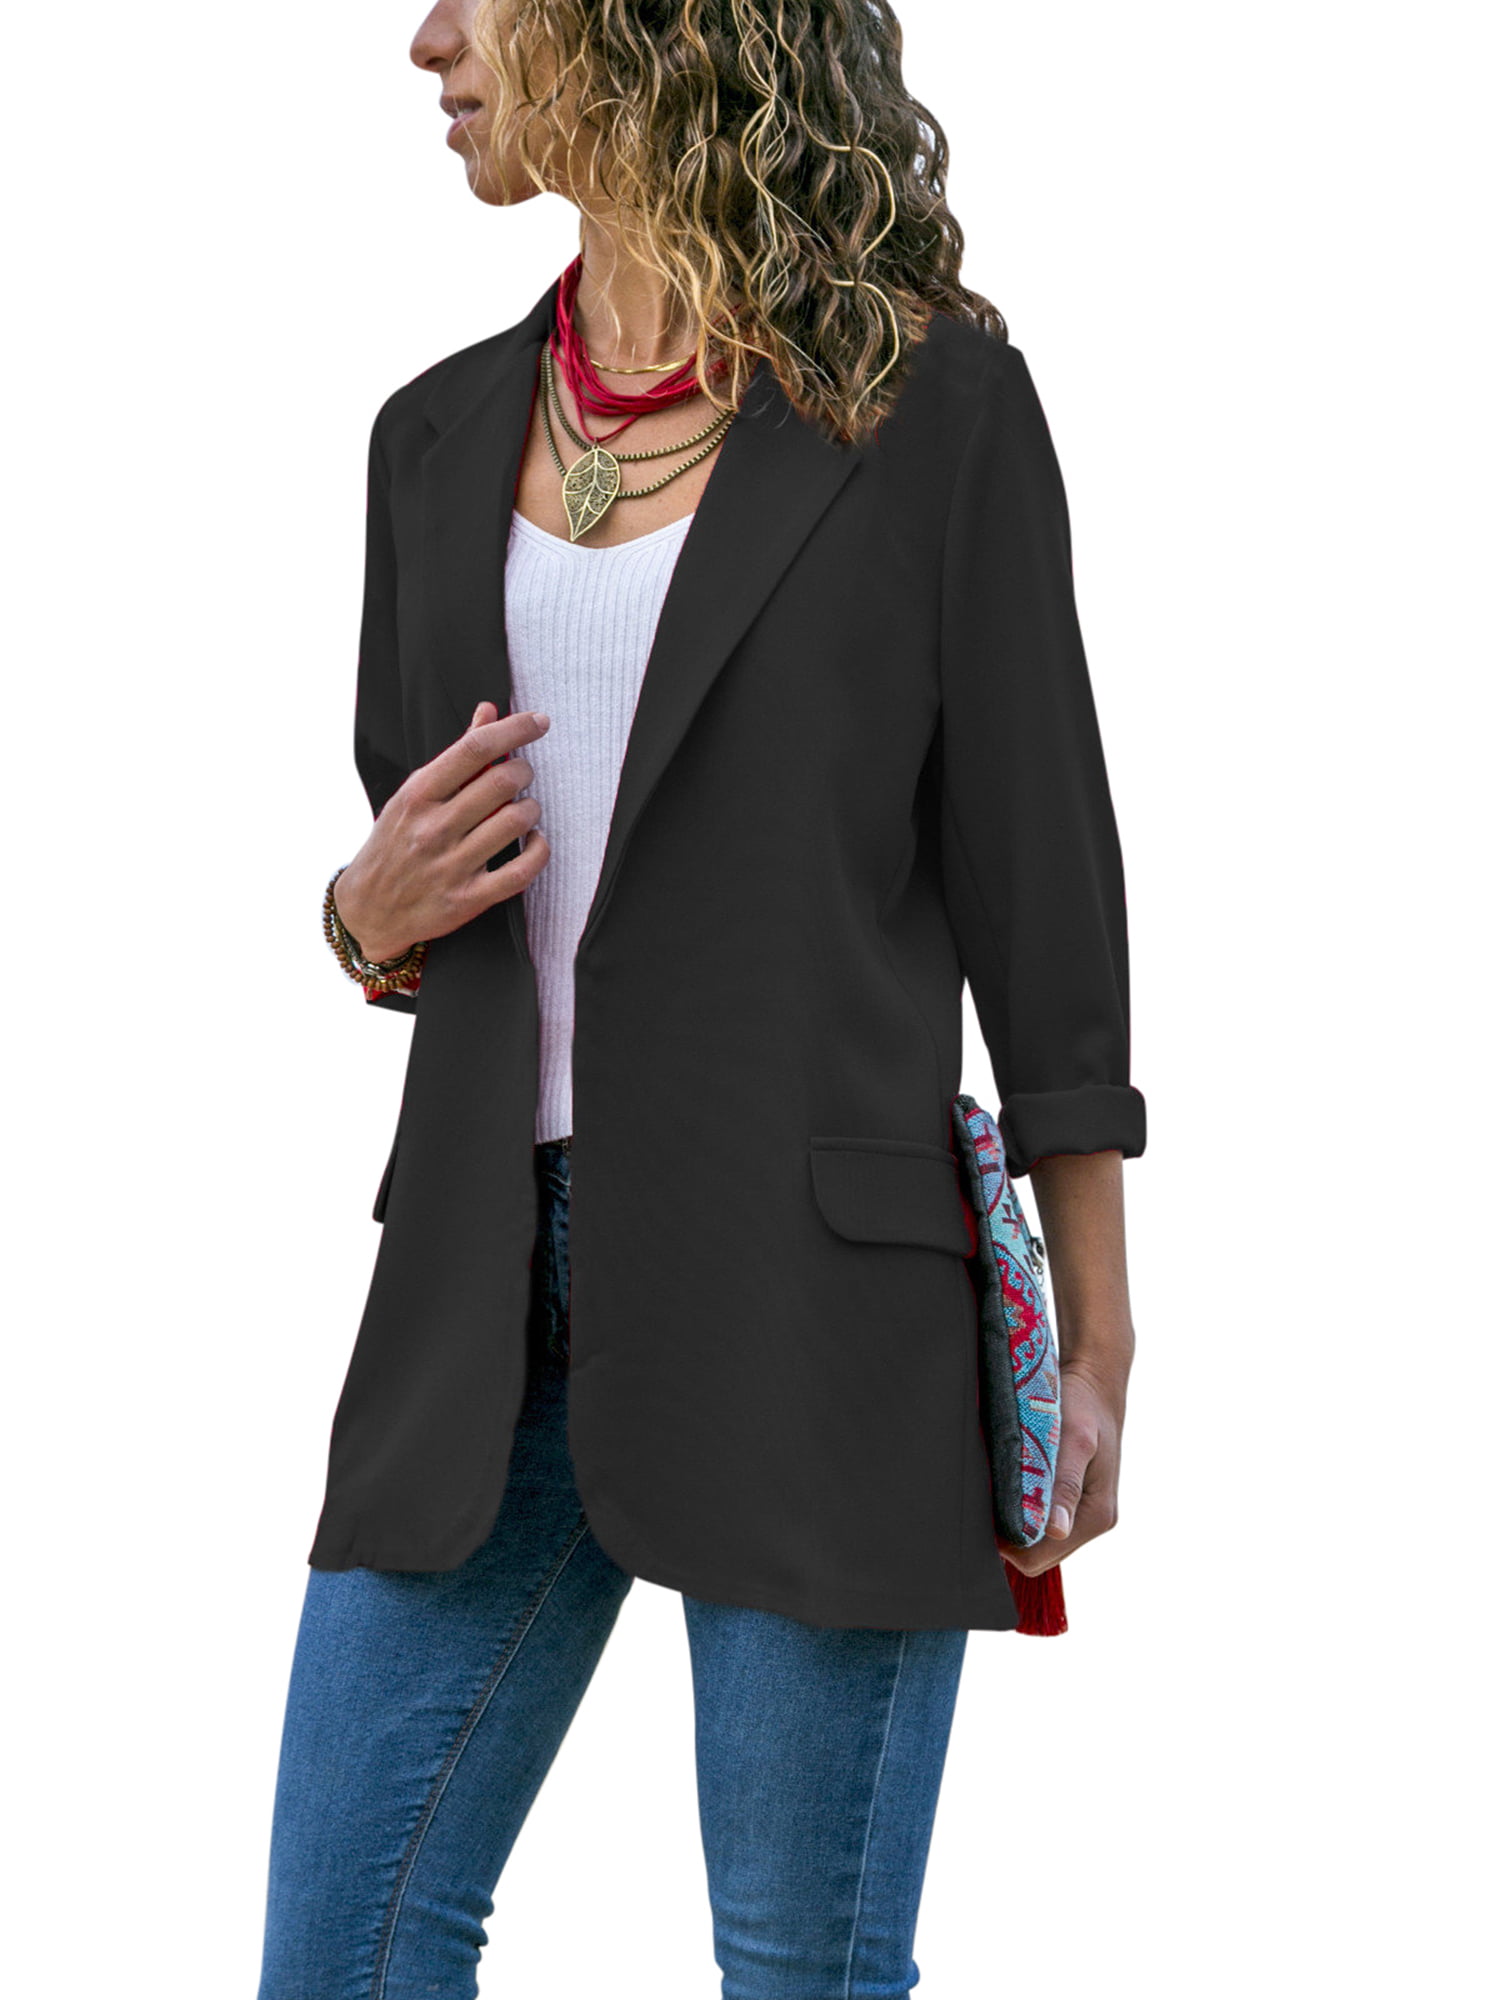 Women OL Work Blazer Suit Ladies Long Sleeve Slim Casual Jacket Coat Outwear Top